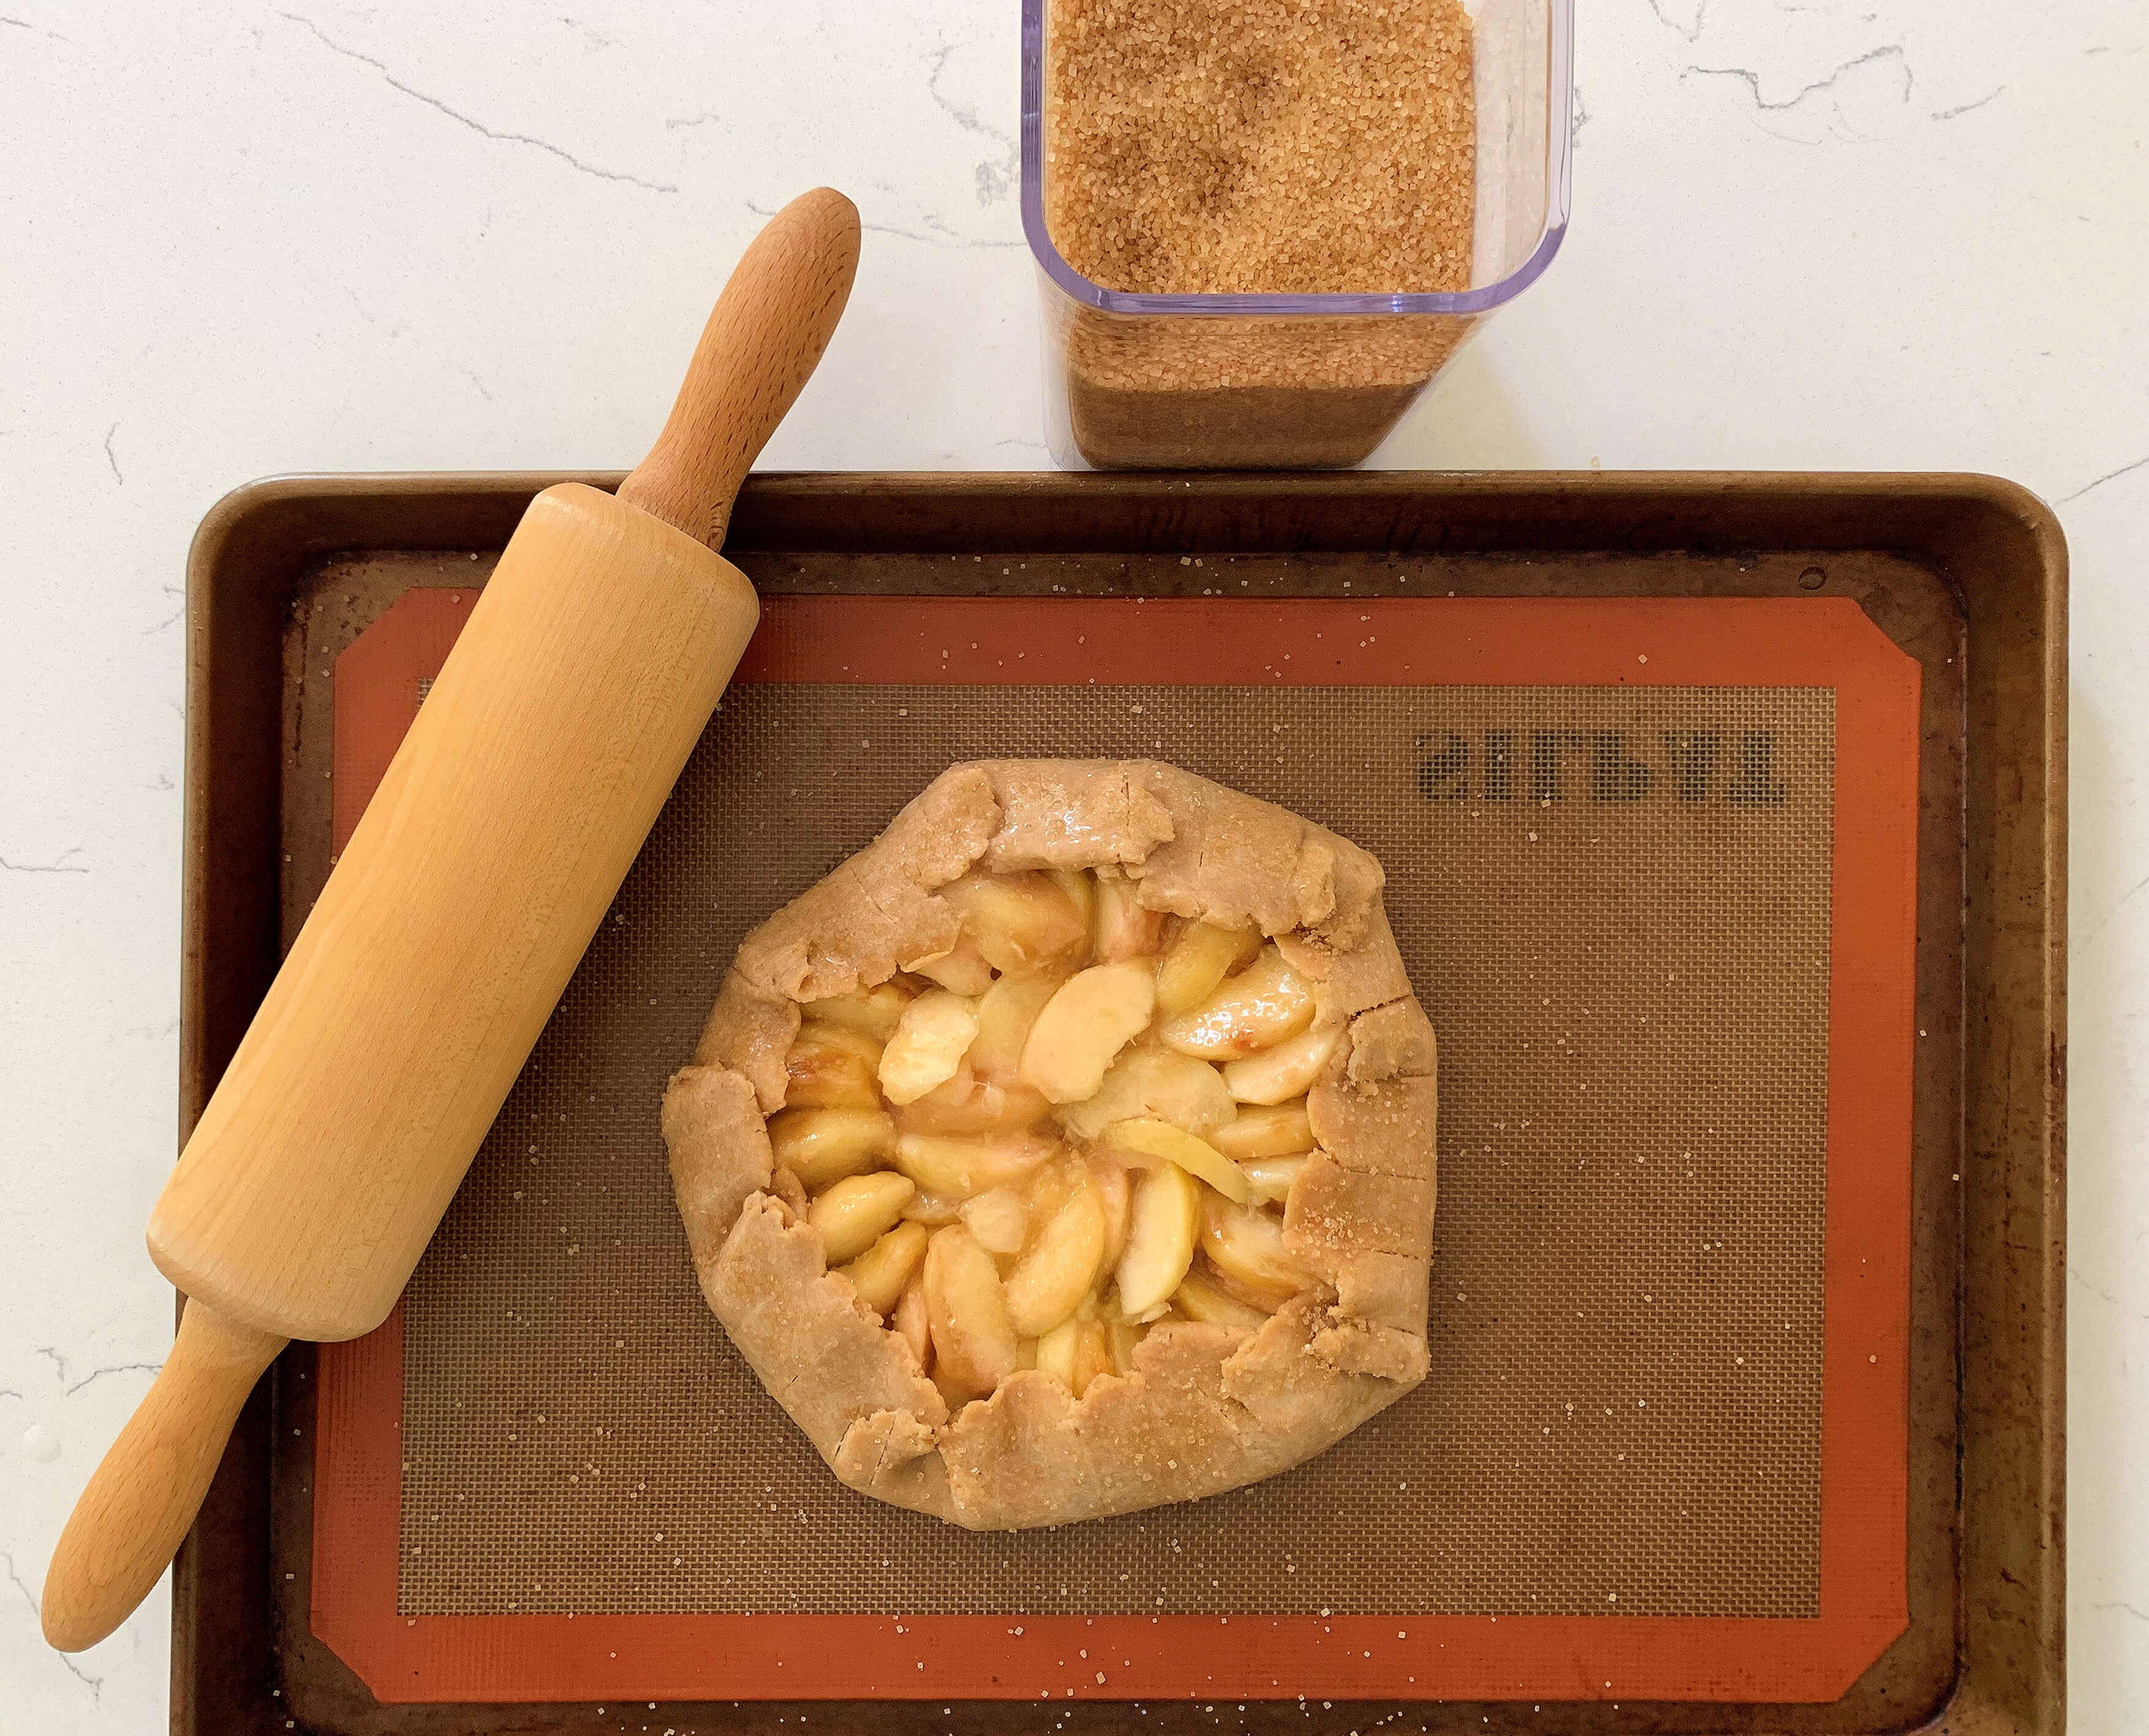 Peach pie ready to bake